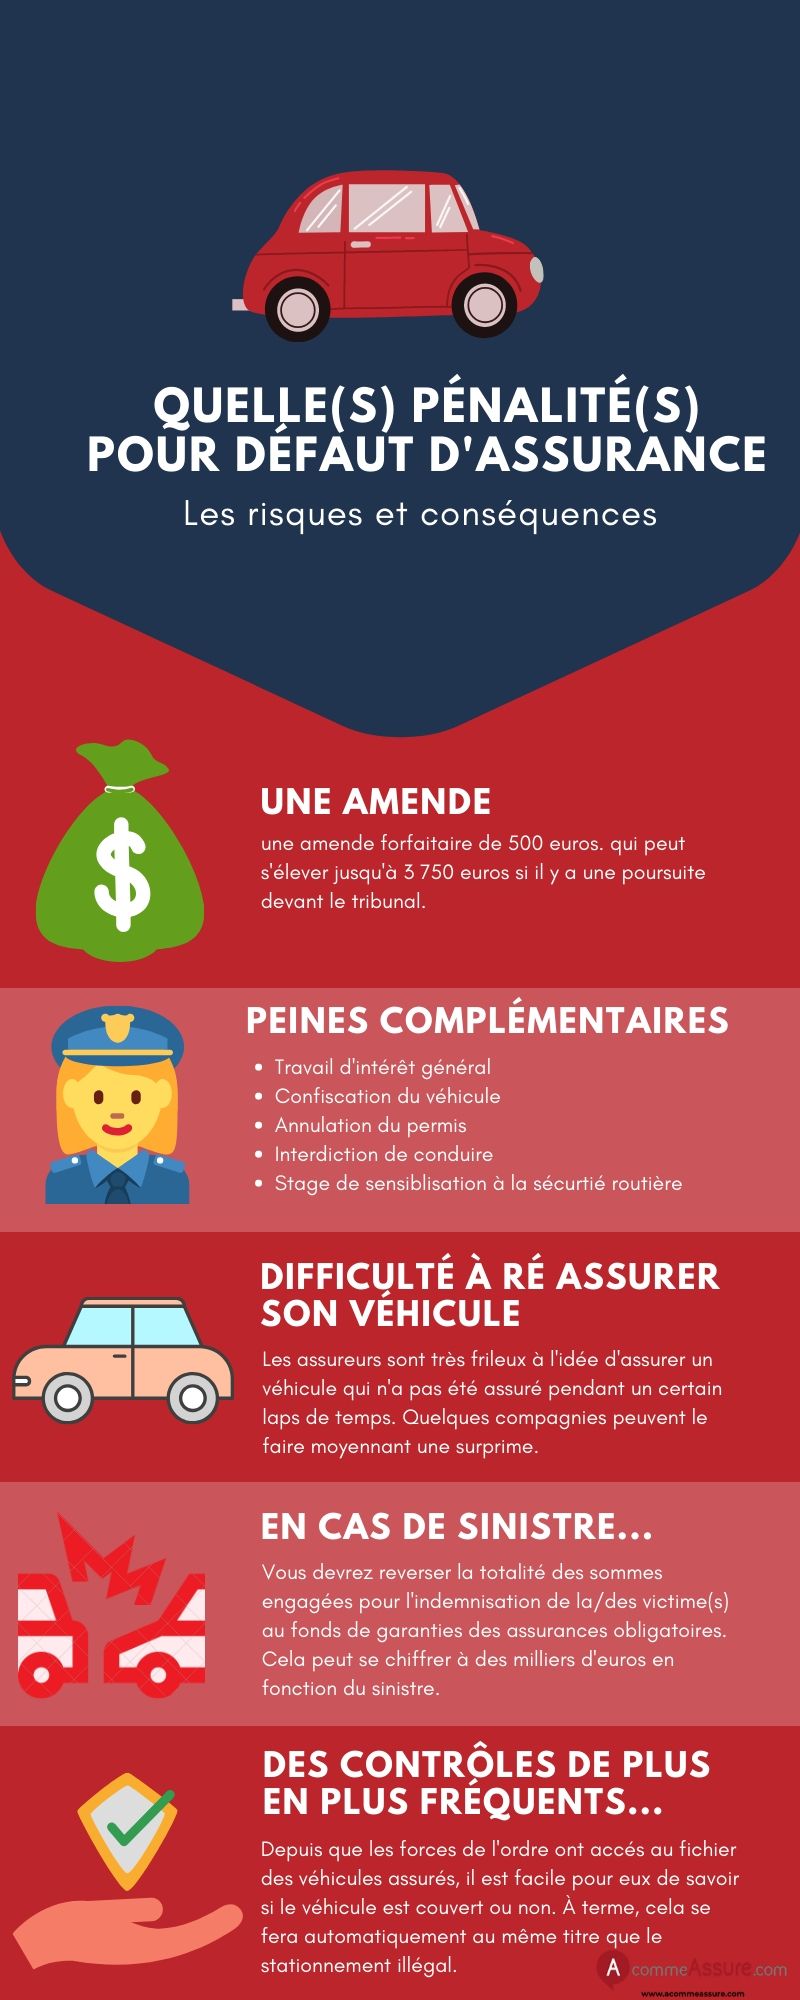 Assurance automobile obligatoire